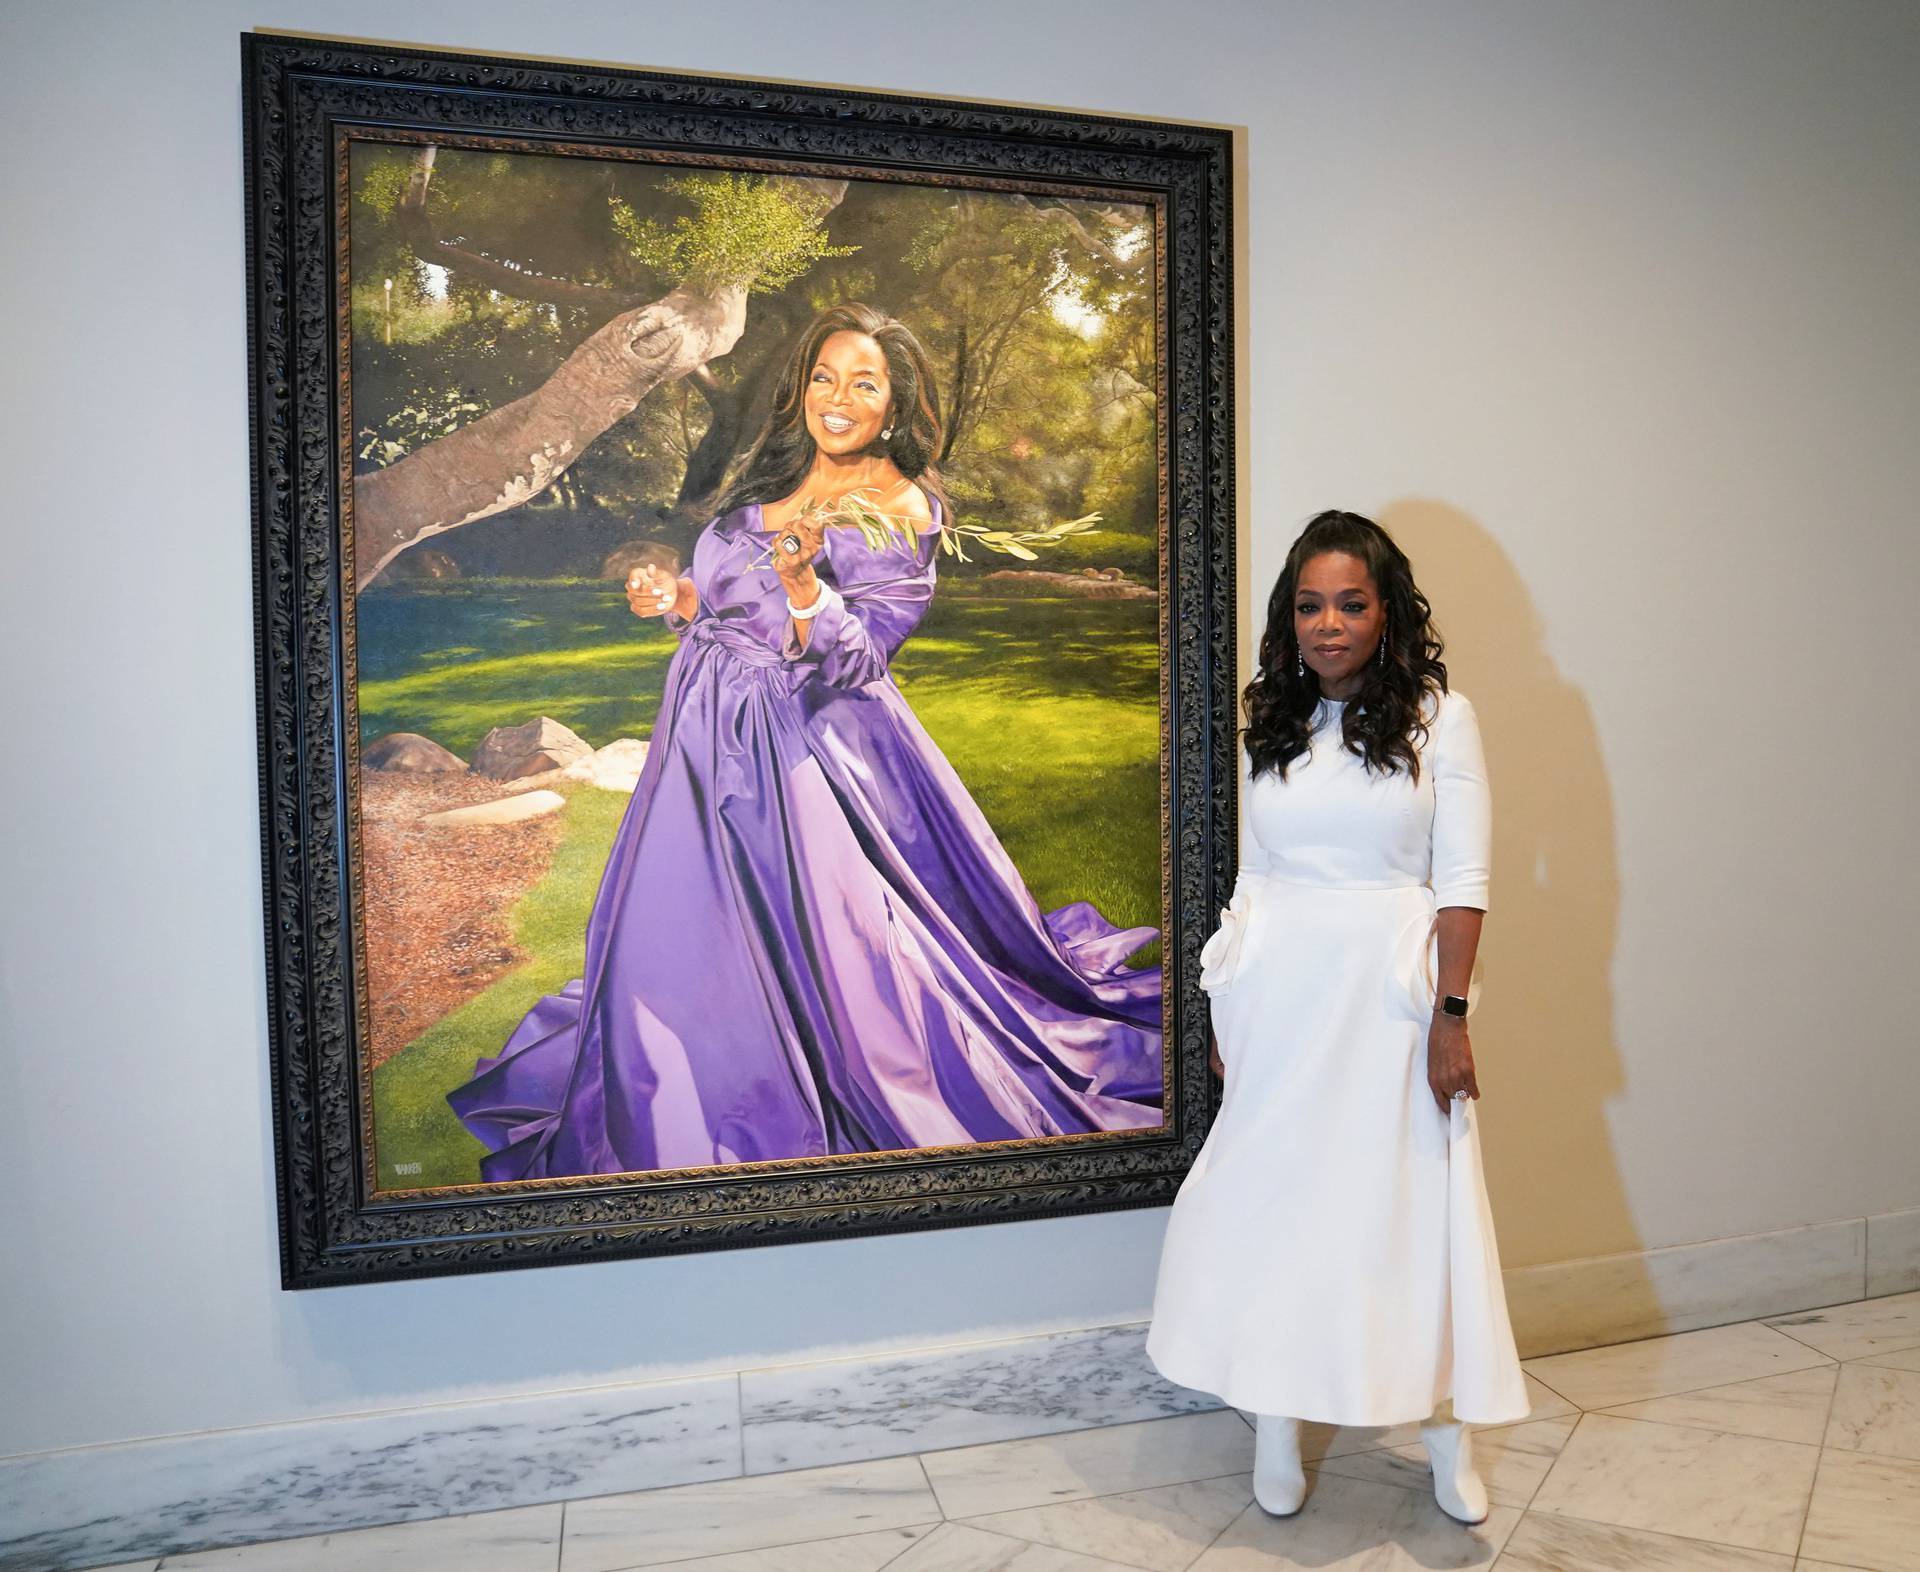 Smithsonian’s National Portrait Gallery unveils portrait of Oprah Winfrey in Washington